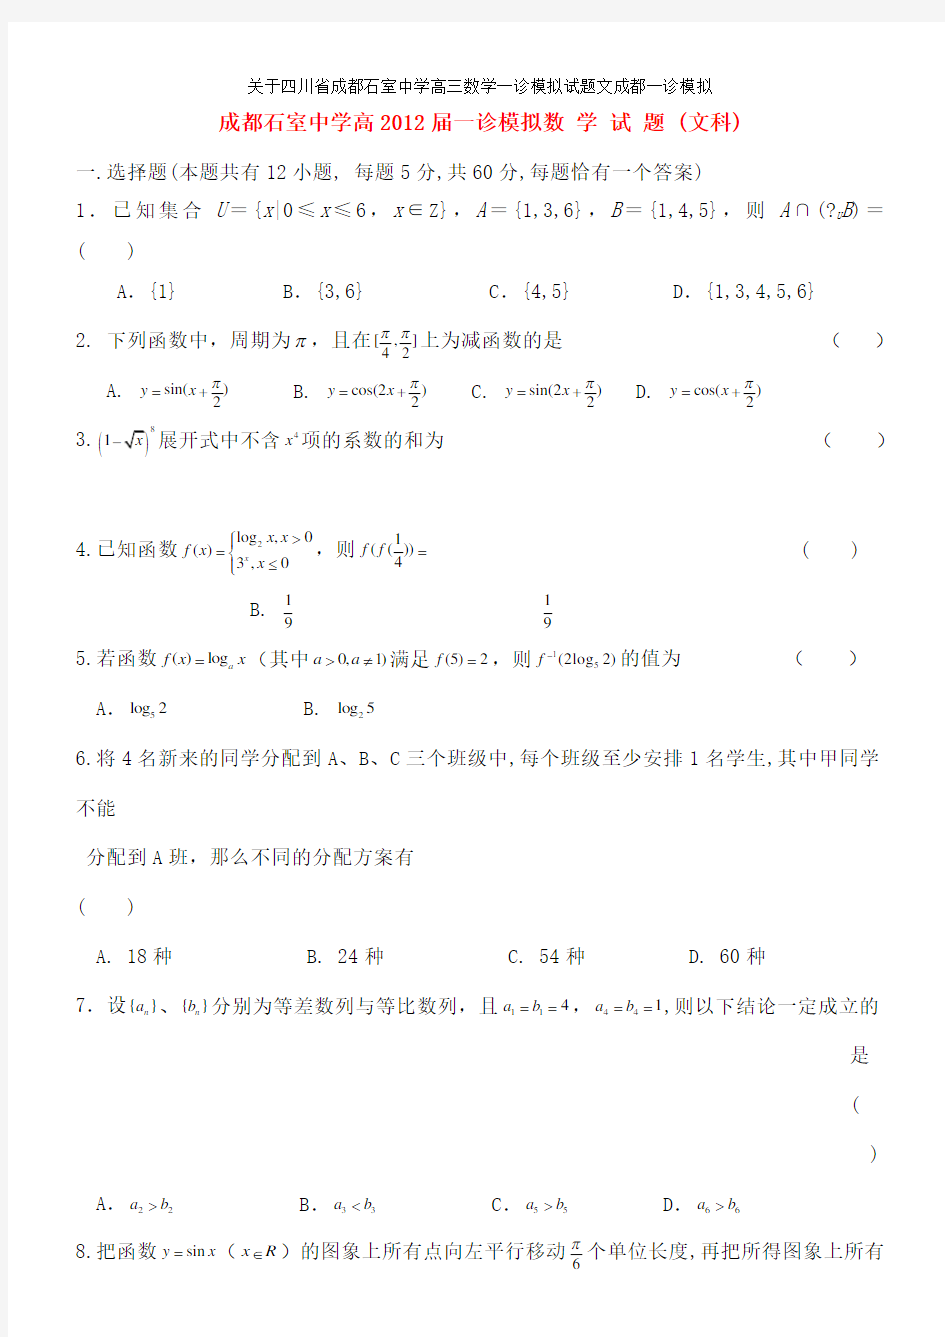 关于四川省成都石室中学高三数学一诊模拟试题文成都一诊模拟